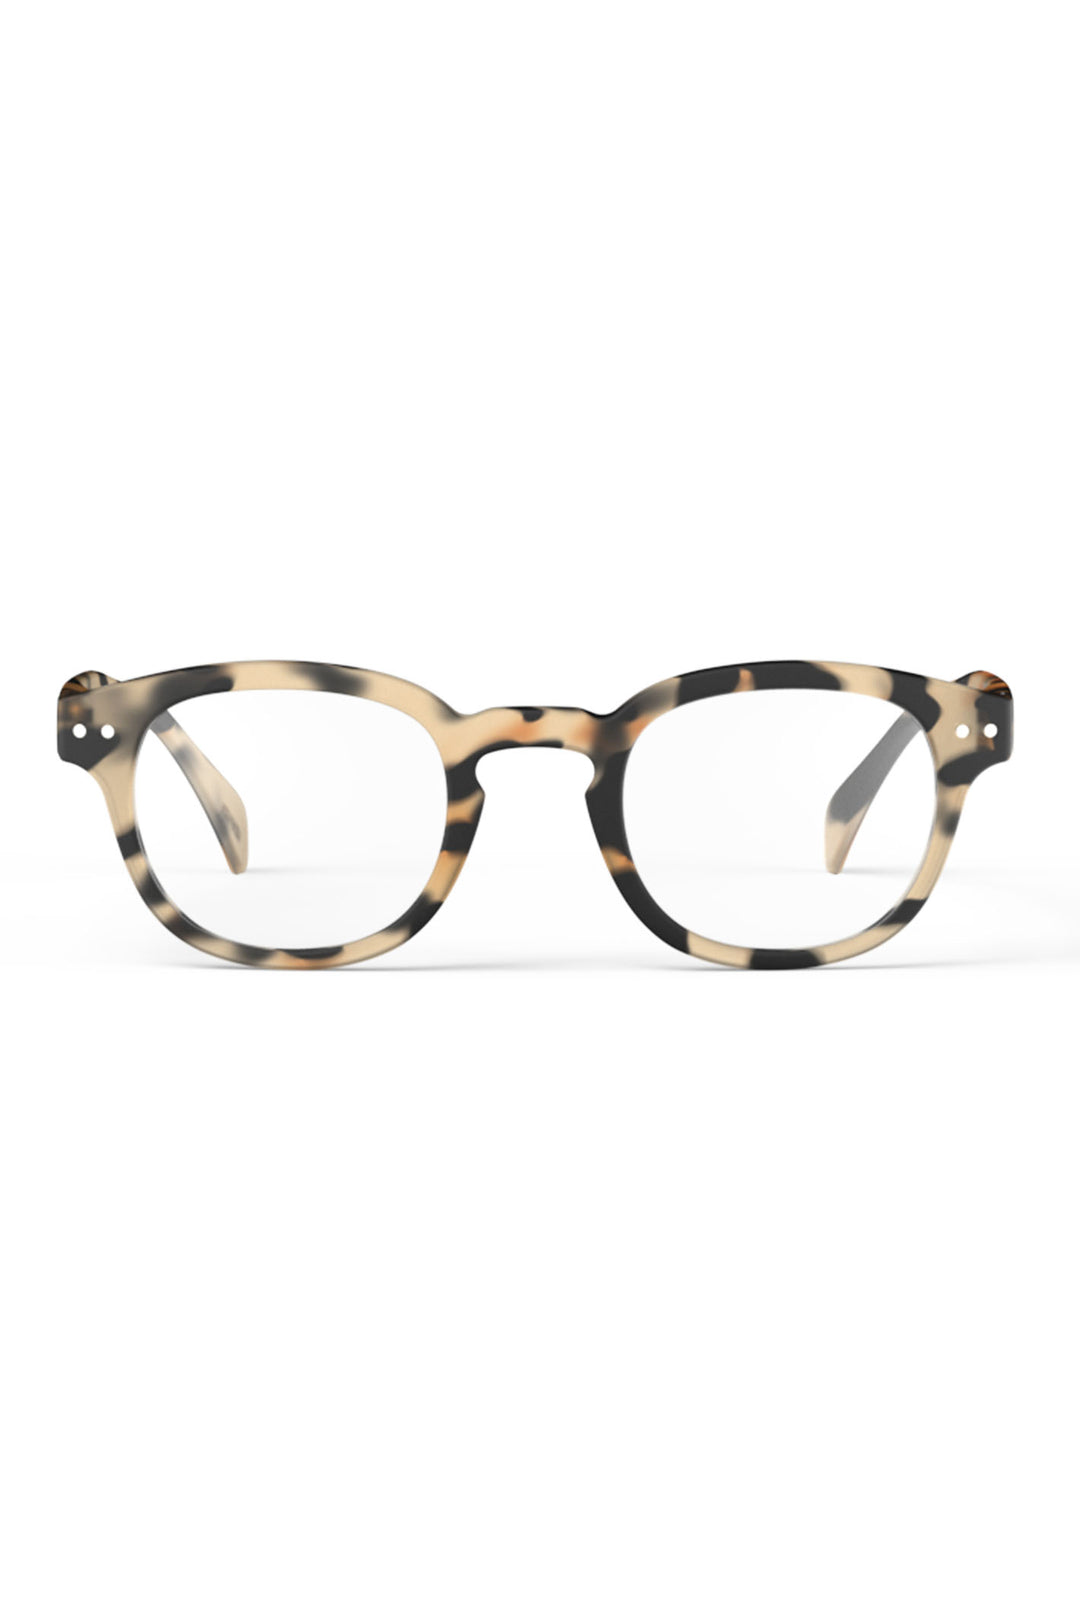 Izipizi Paris LMSCC69 Light Tortoise Pattern Reading Glasses - Olivia Grace Fashion